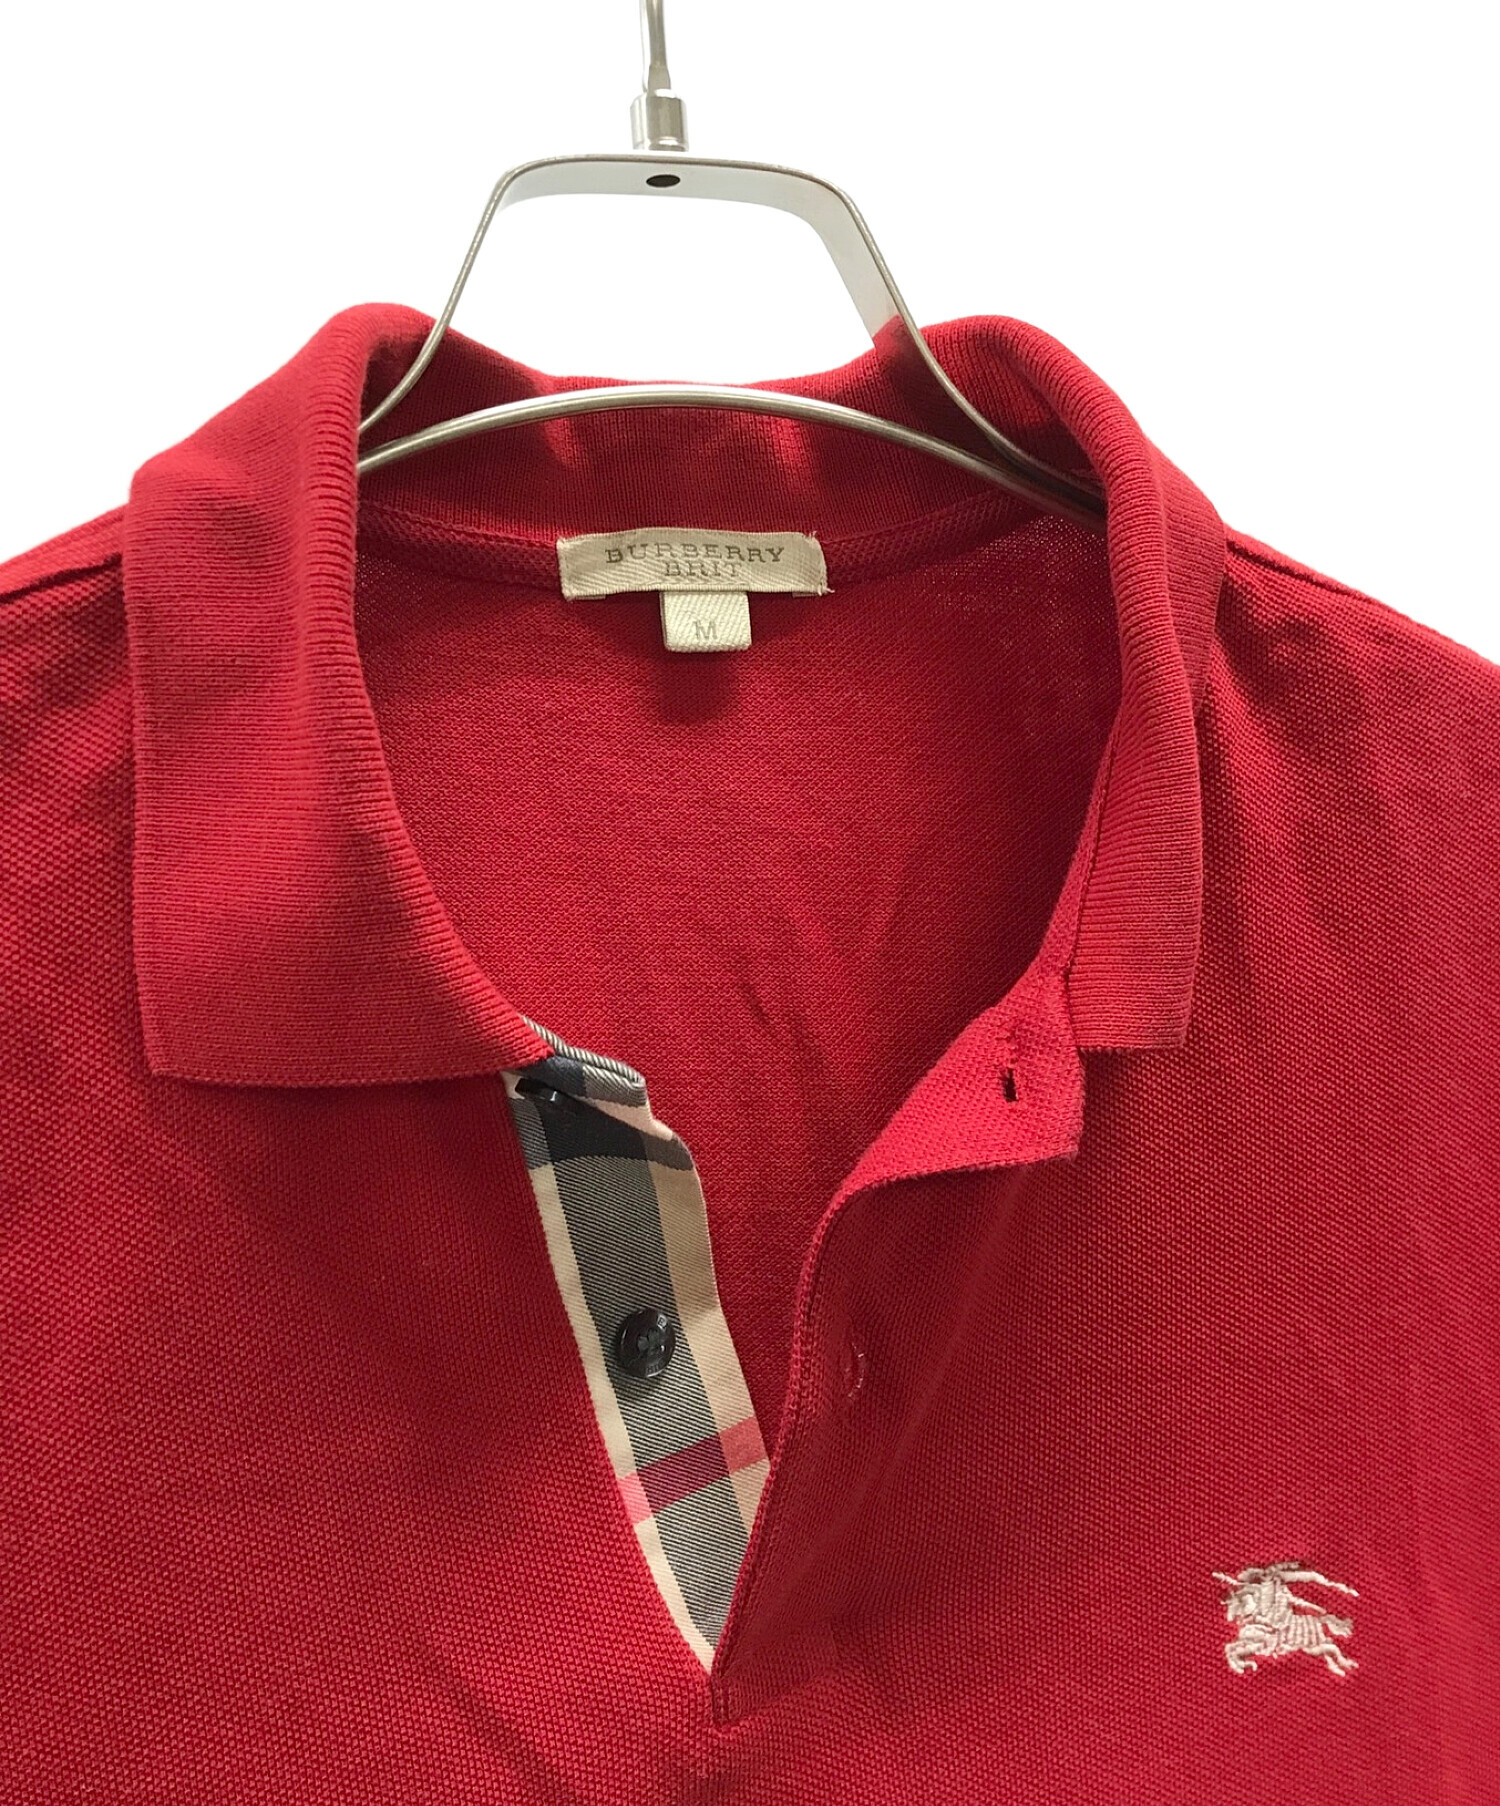 BURBERRY BRIT (バーバリーブリット) ポロシャツ レッド サイズ:実寸サイズにてご確認ください。